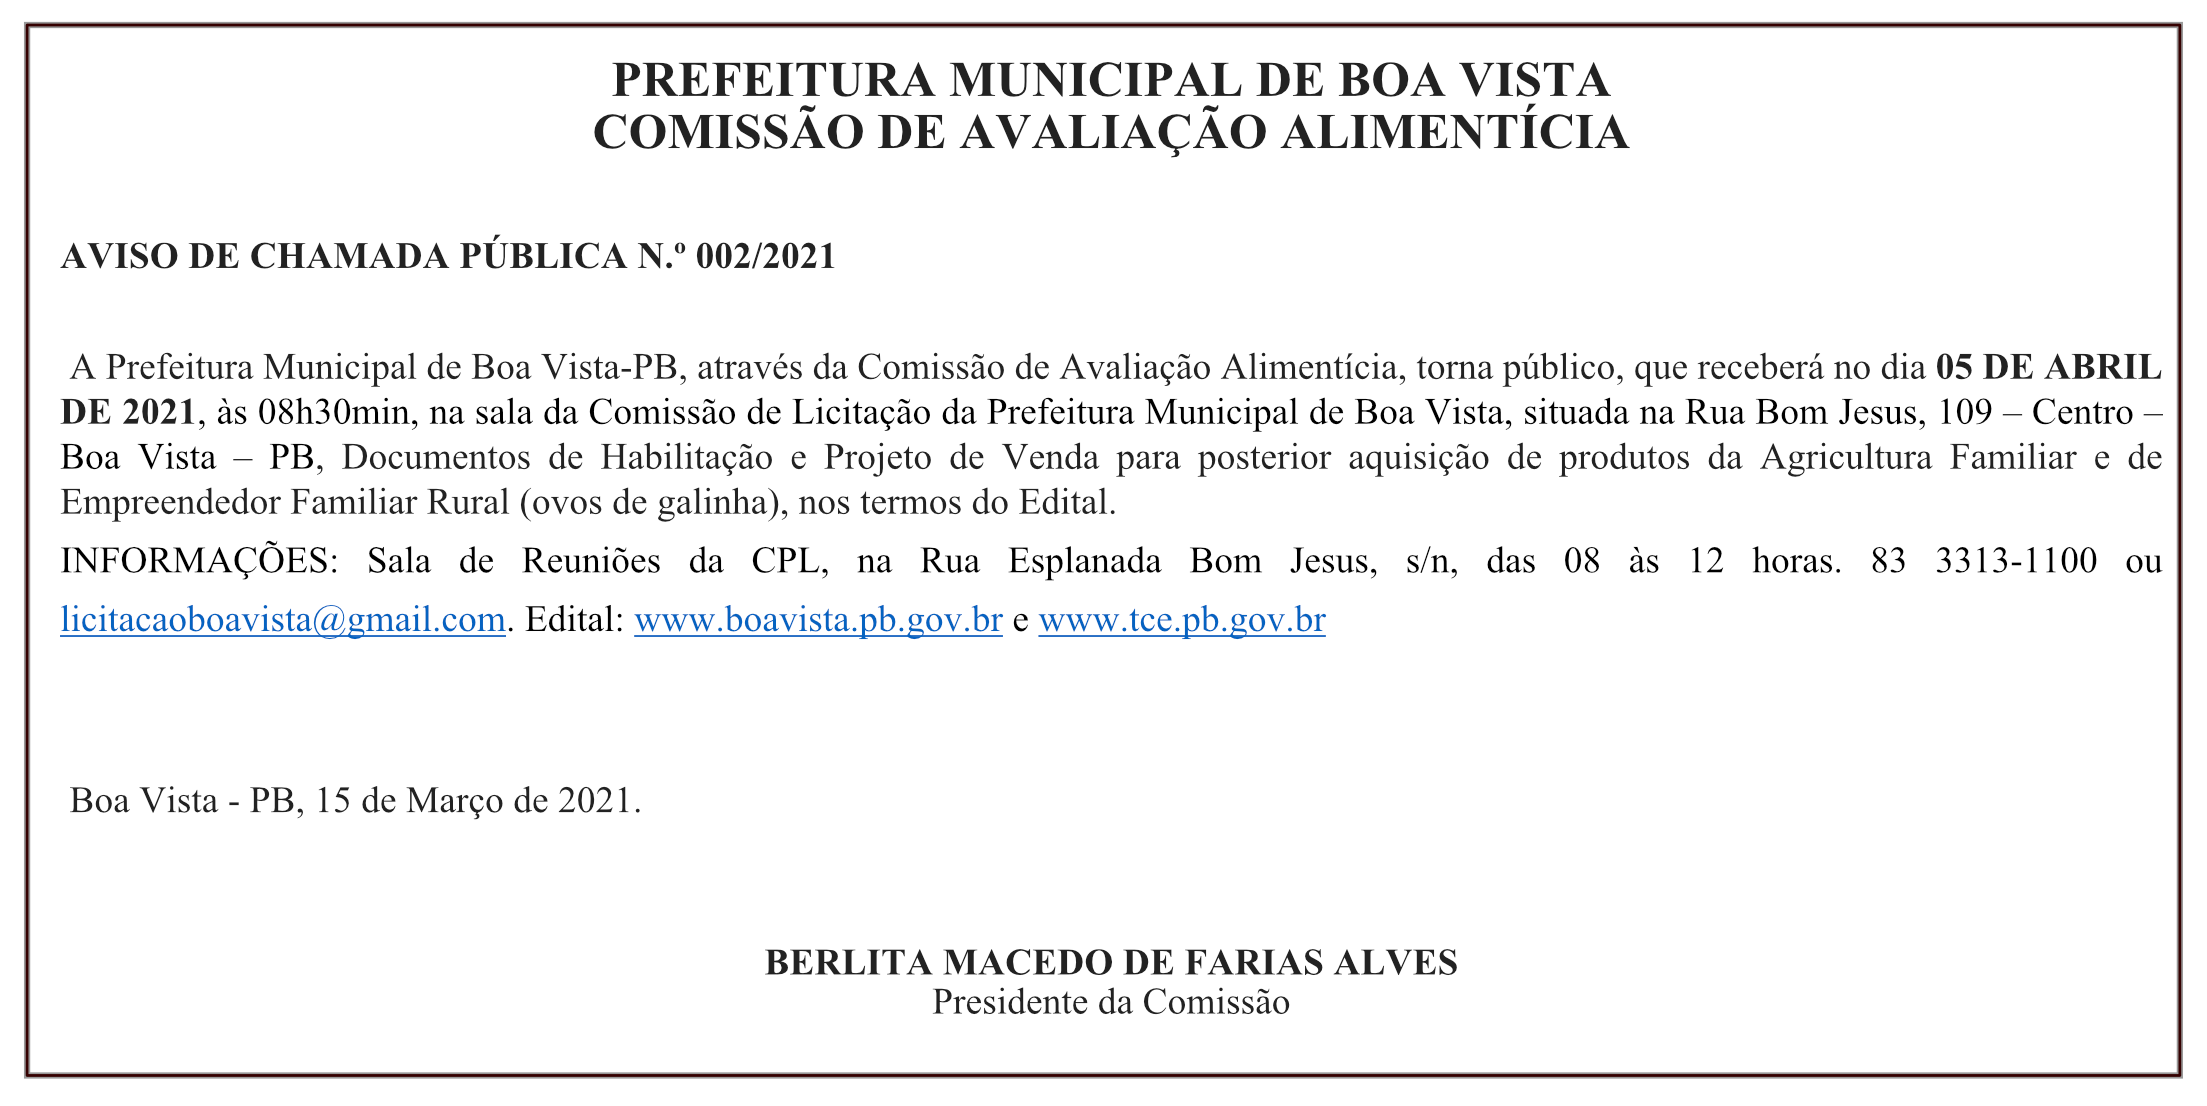 PREFEITURA MUNICIPAL DE BOA VISTA – COMISSÃO DE AVALIAÇÃO ALIMENTÍCIA – AVISO DE CHAMADA PÚBLICA N.º 002/2021